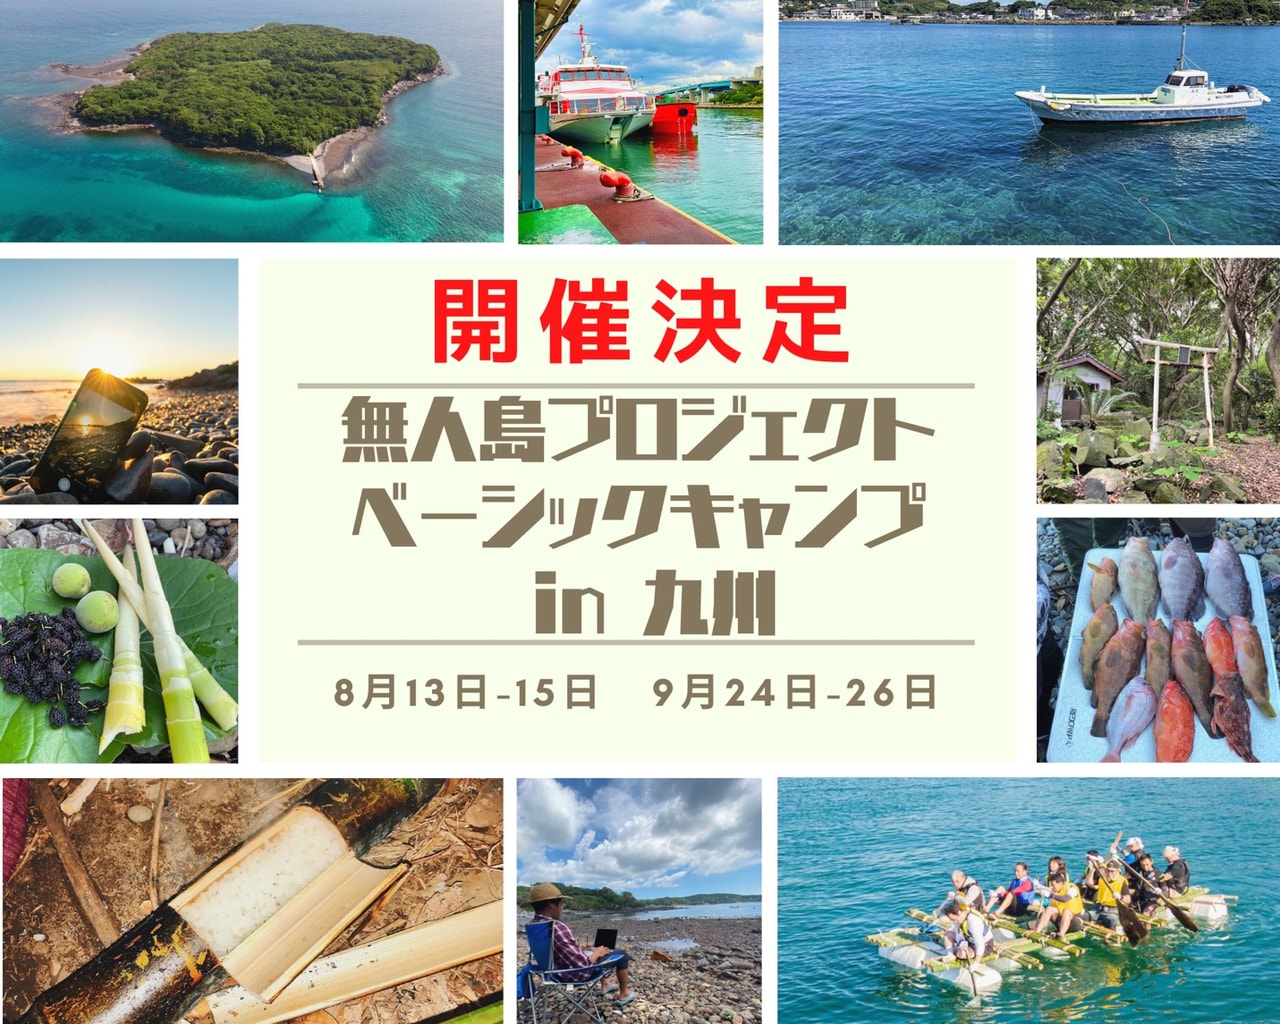 無人島が舞台の人気サバイバルイベントがついに九州初上陸 8月と9月に開催決定 キャンプクエスト キャンプ情報満載のアウトドアニュースメディア